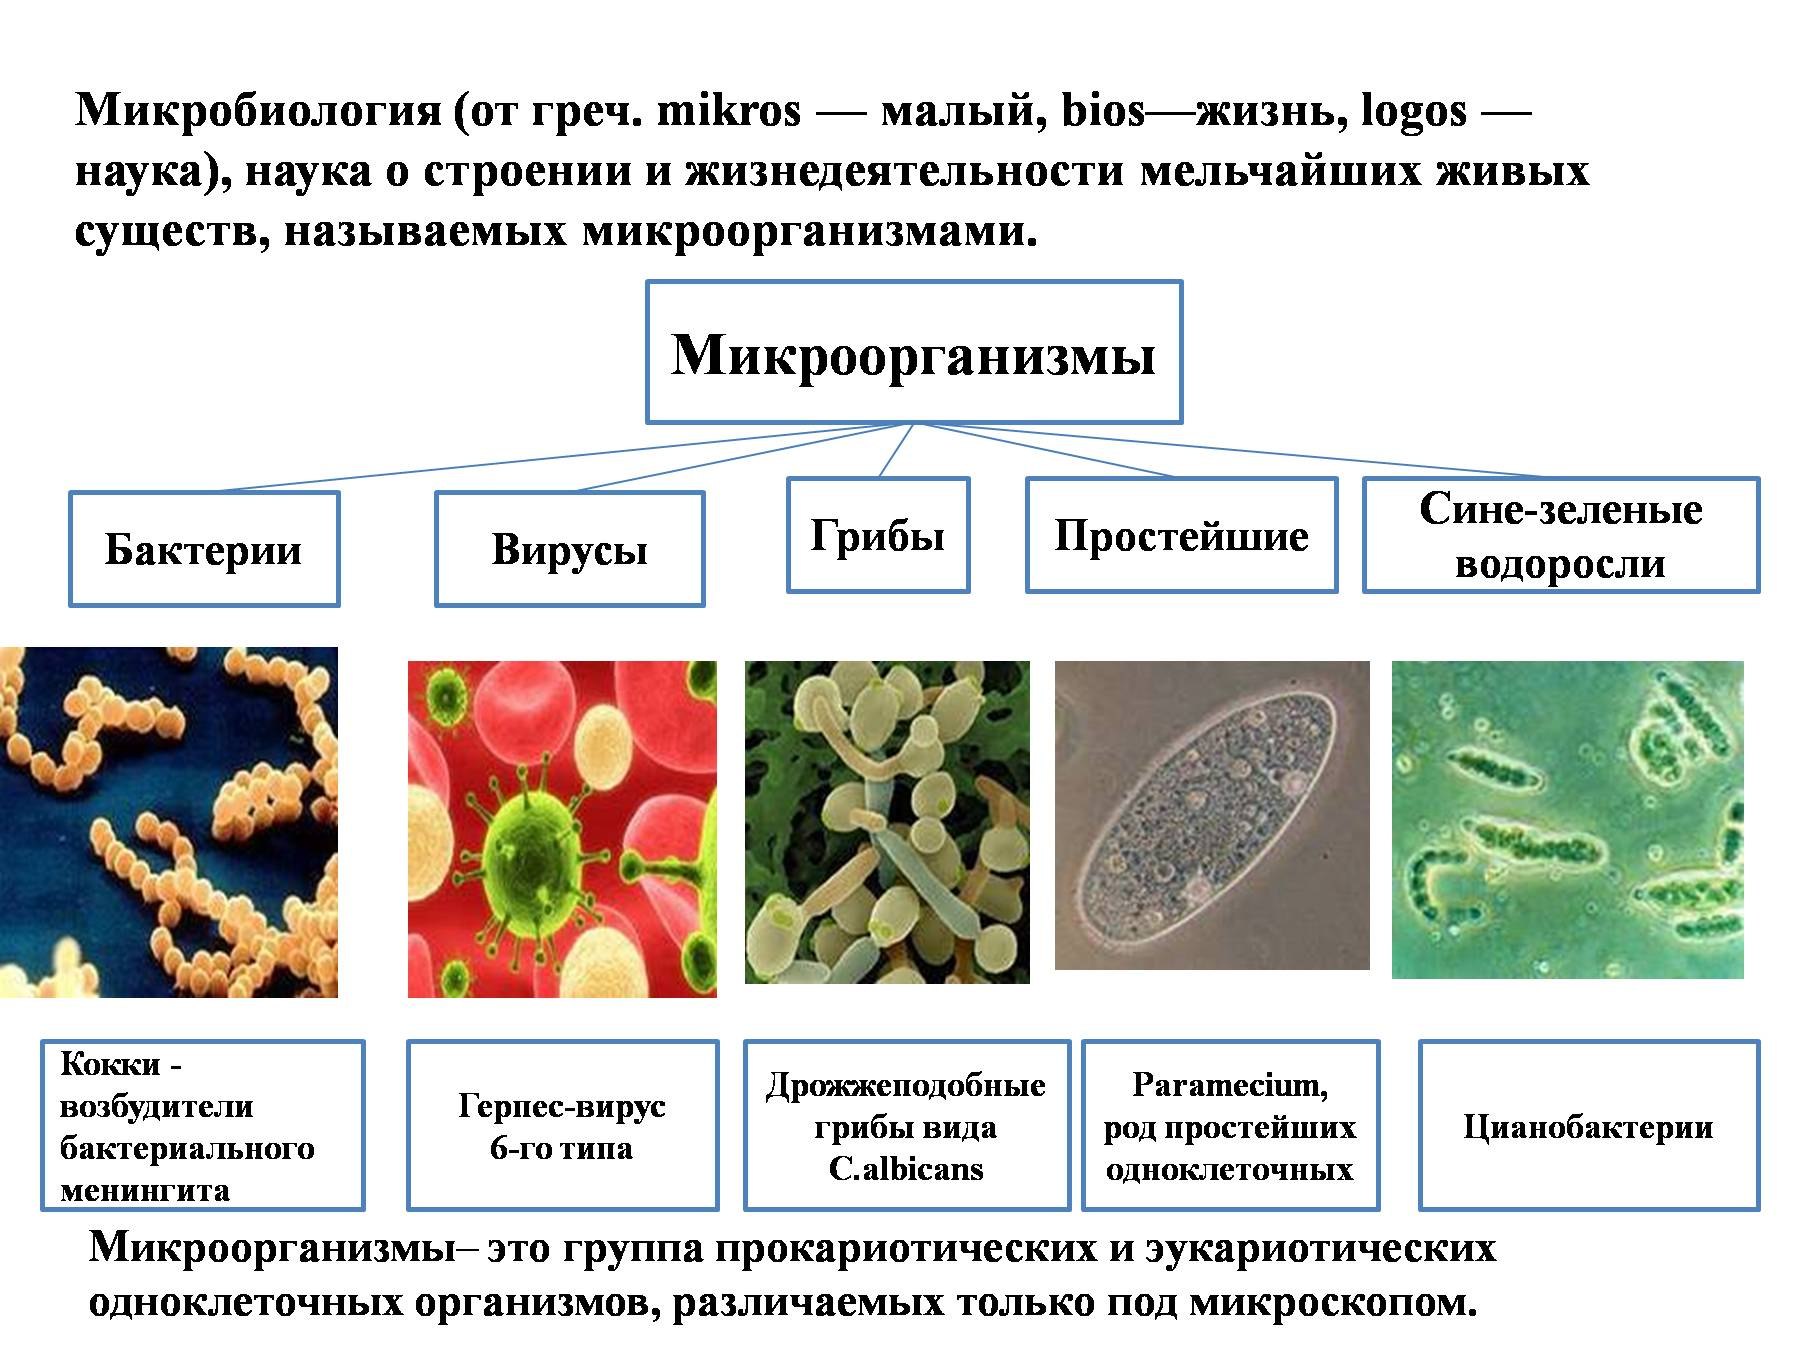 Группы организмов прокариот. Строение микробов микробиология. Бактерии и вирусы таблица микробиология. Вирусы бактерии протисты. Классификация бактерий и вирусов.